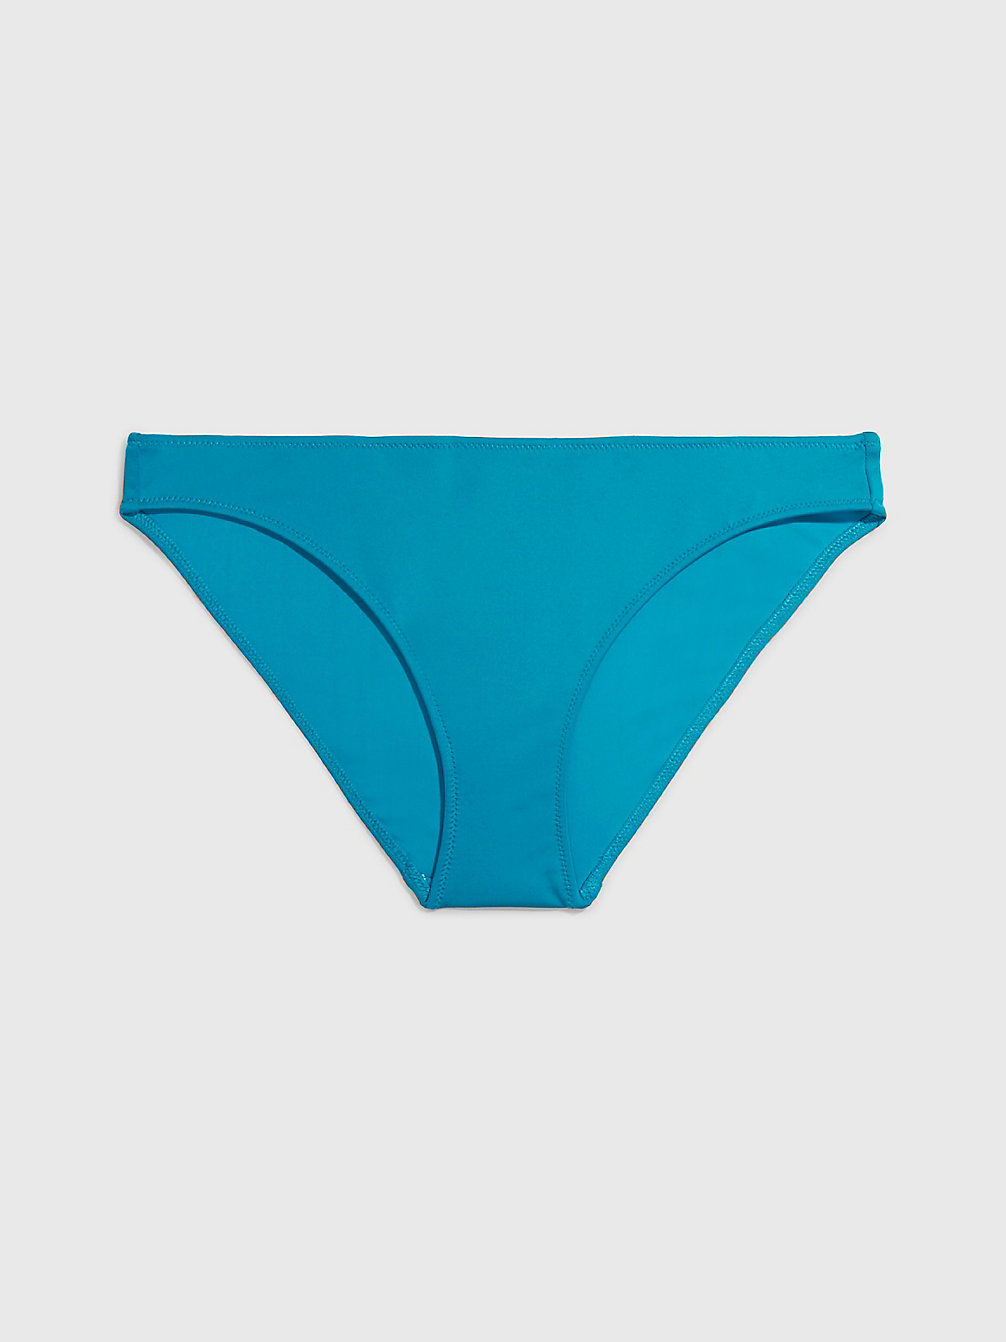 CLEAR TURQUOISE Bikinihosen – CK Monogram undefined Damen Calvin Klein